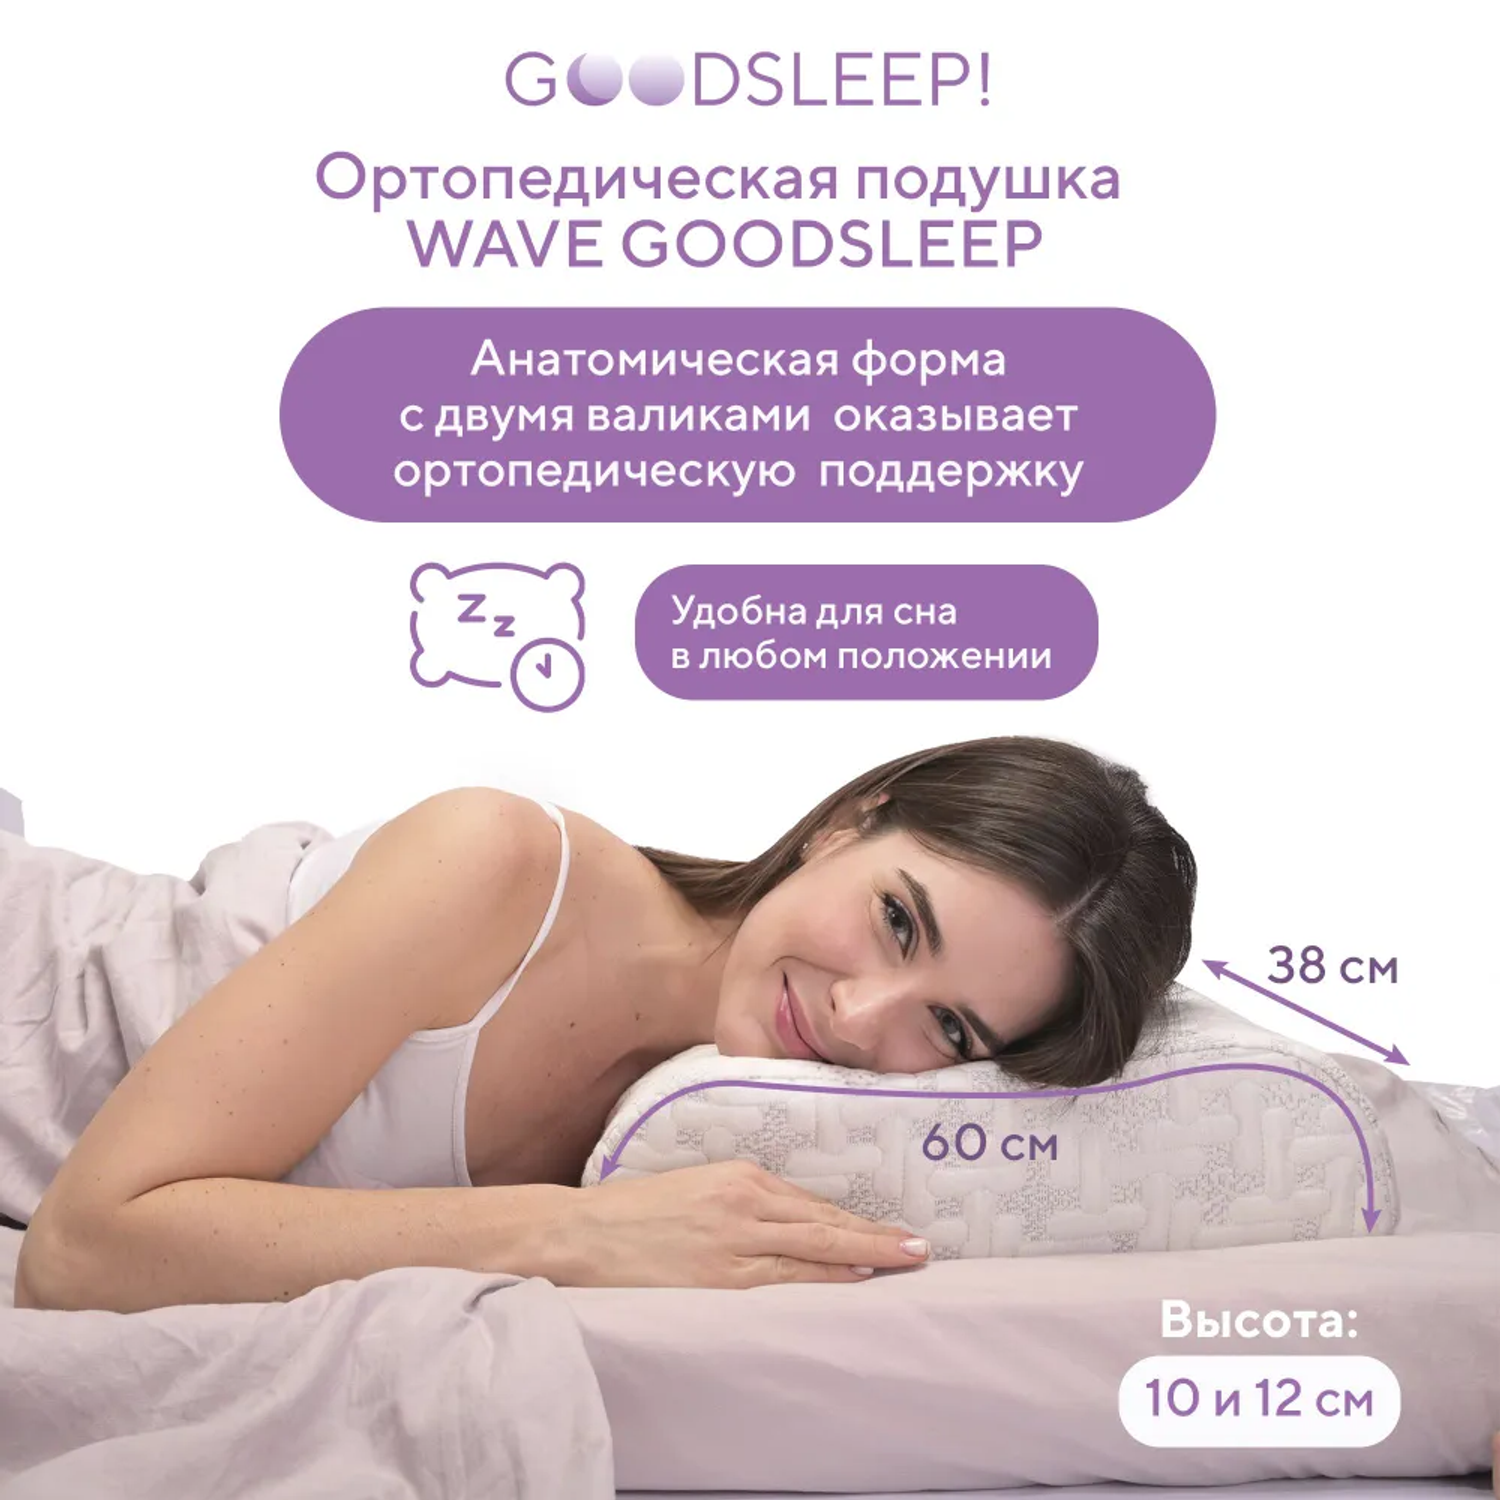 Ортопедическая подушка Goodsleep! для сна для взрослых с эффектом памяти - фото 5